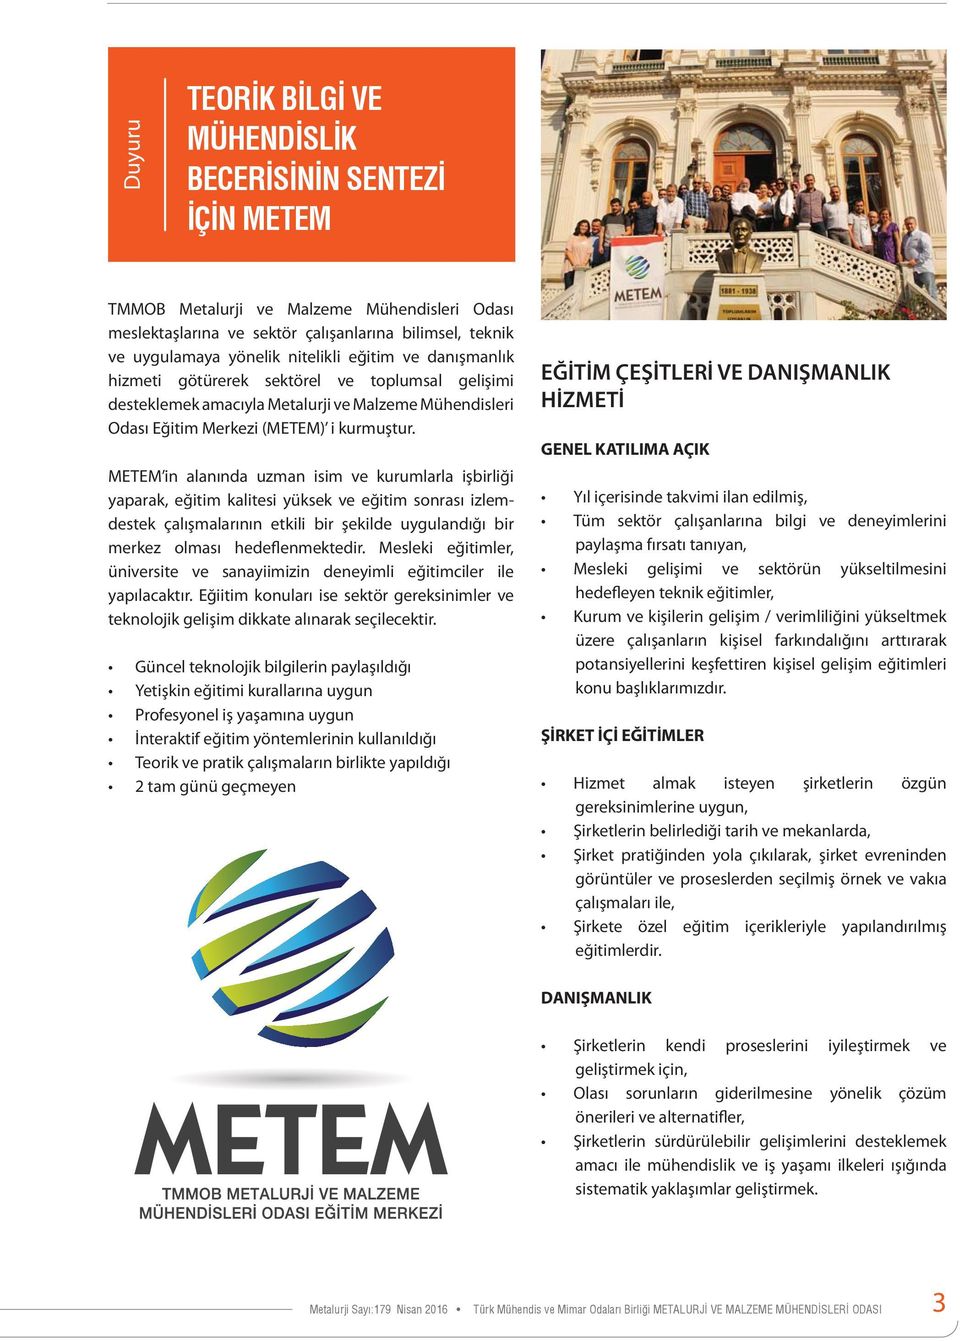 METEM in alanında uzman isim ve kurumlarla işbirliği yaparak, eğitim kalitesi yüksek ve eğitim sonrası izlemdestek çalışmalarının etkili bir şekilde uygulandığı bir merkez olması hedeflenmektedir.